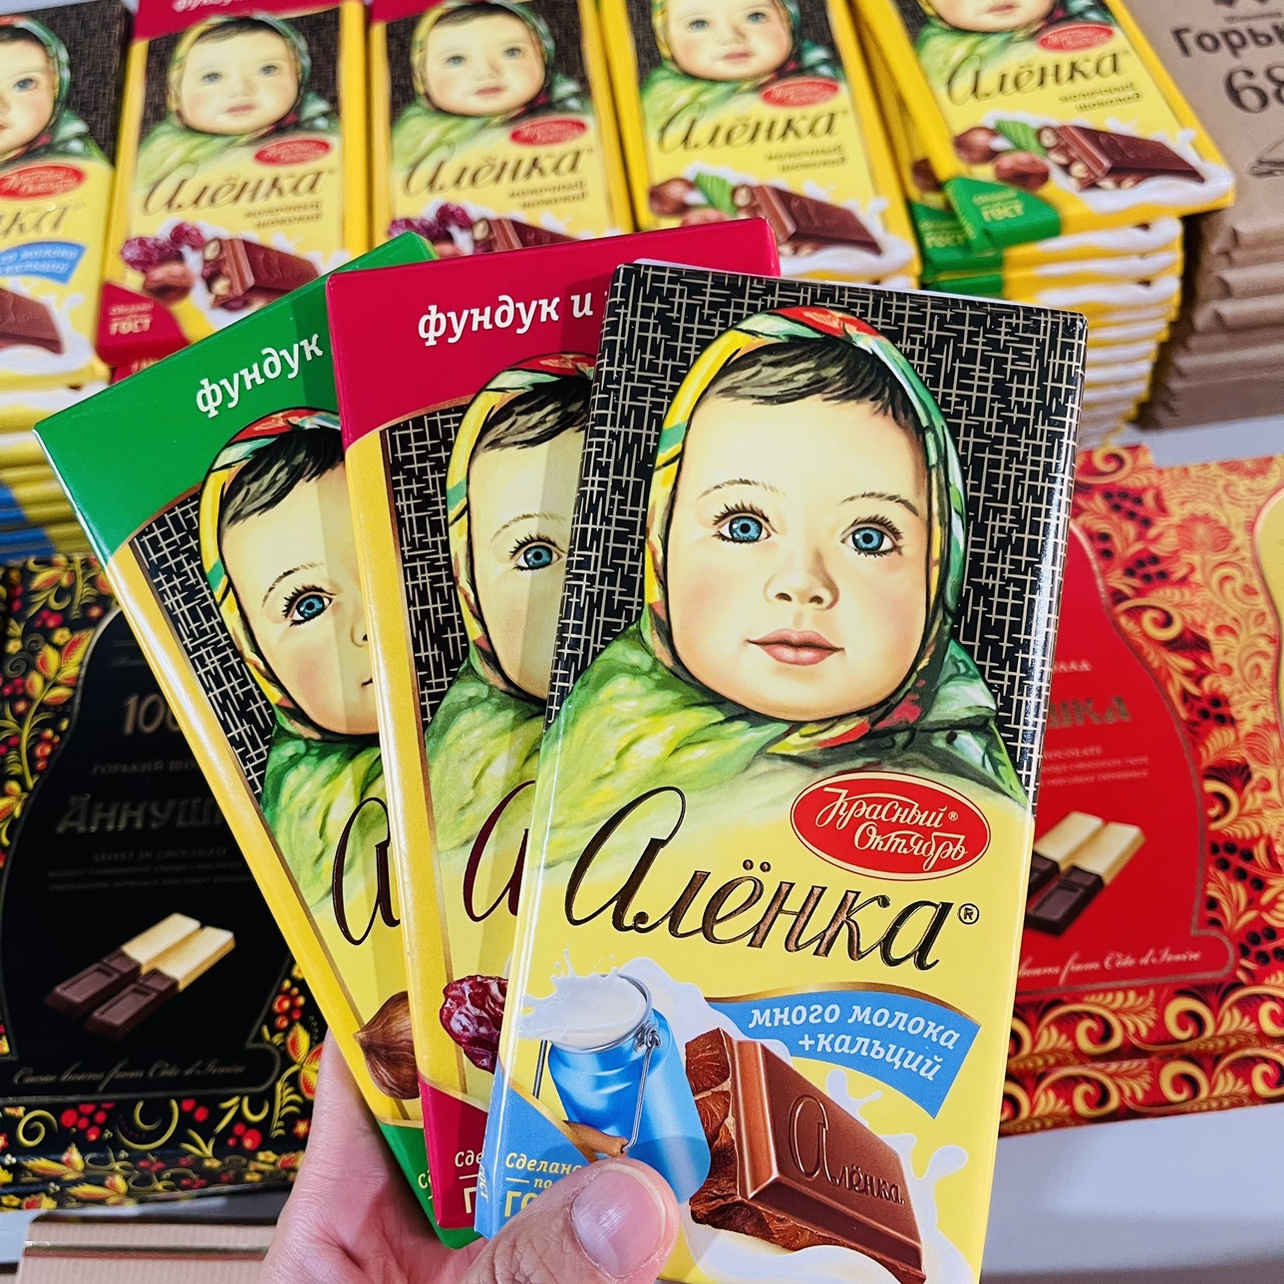 原装进口俄罗斯红十月大头娃娃巧克力纯可可脂榛子杏仁牛奶原味